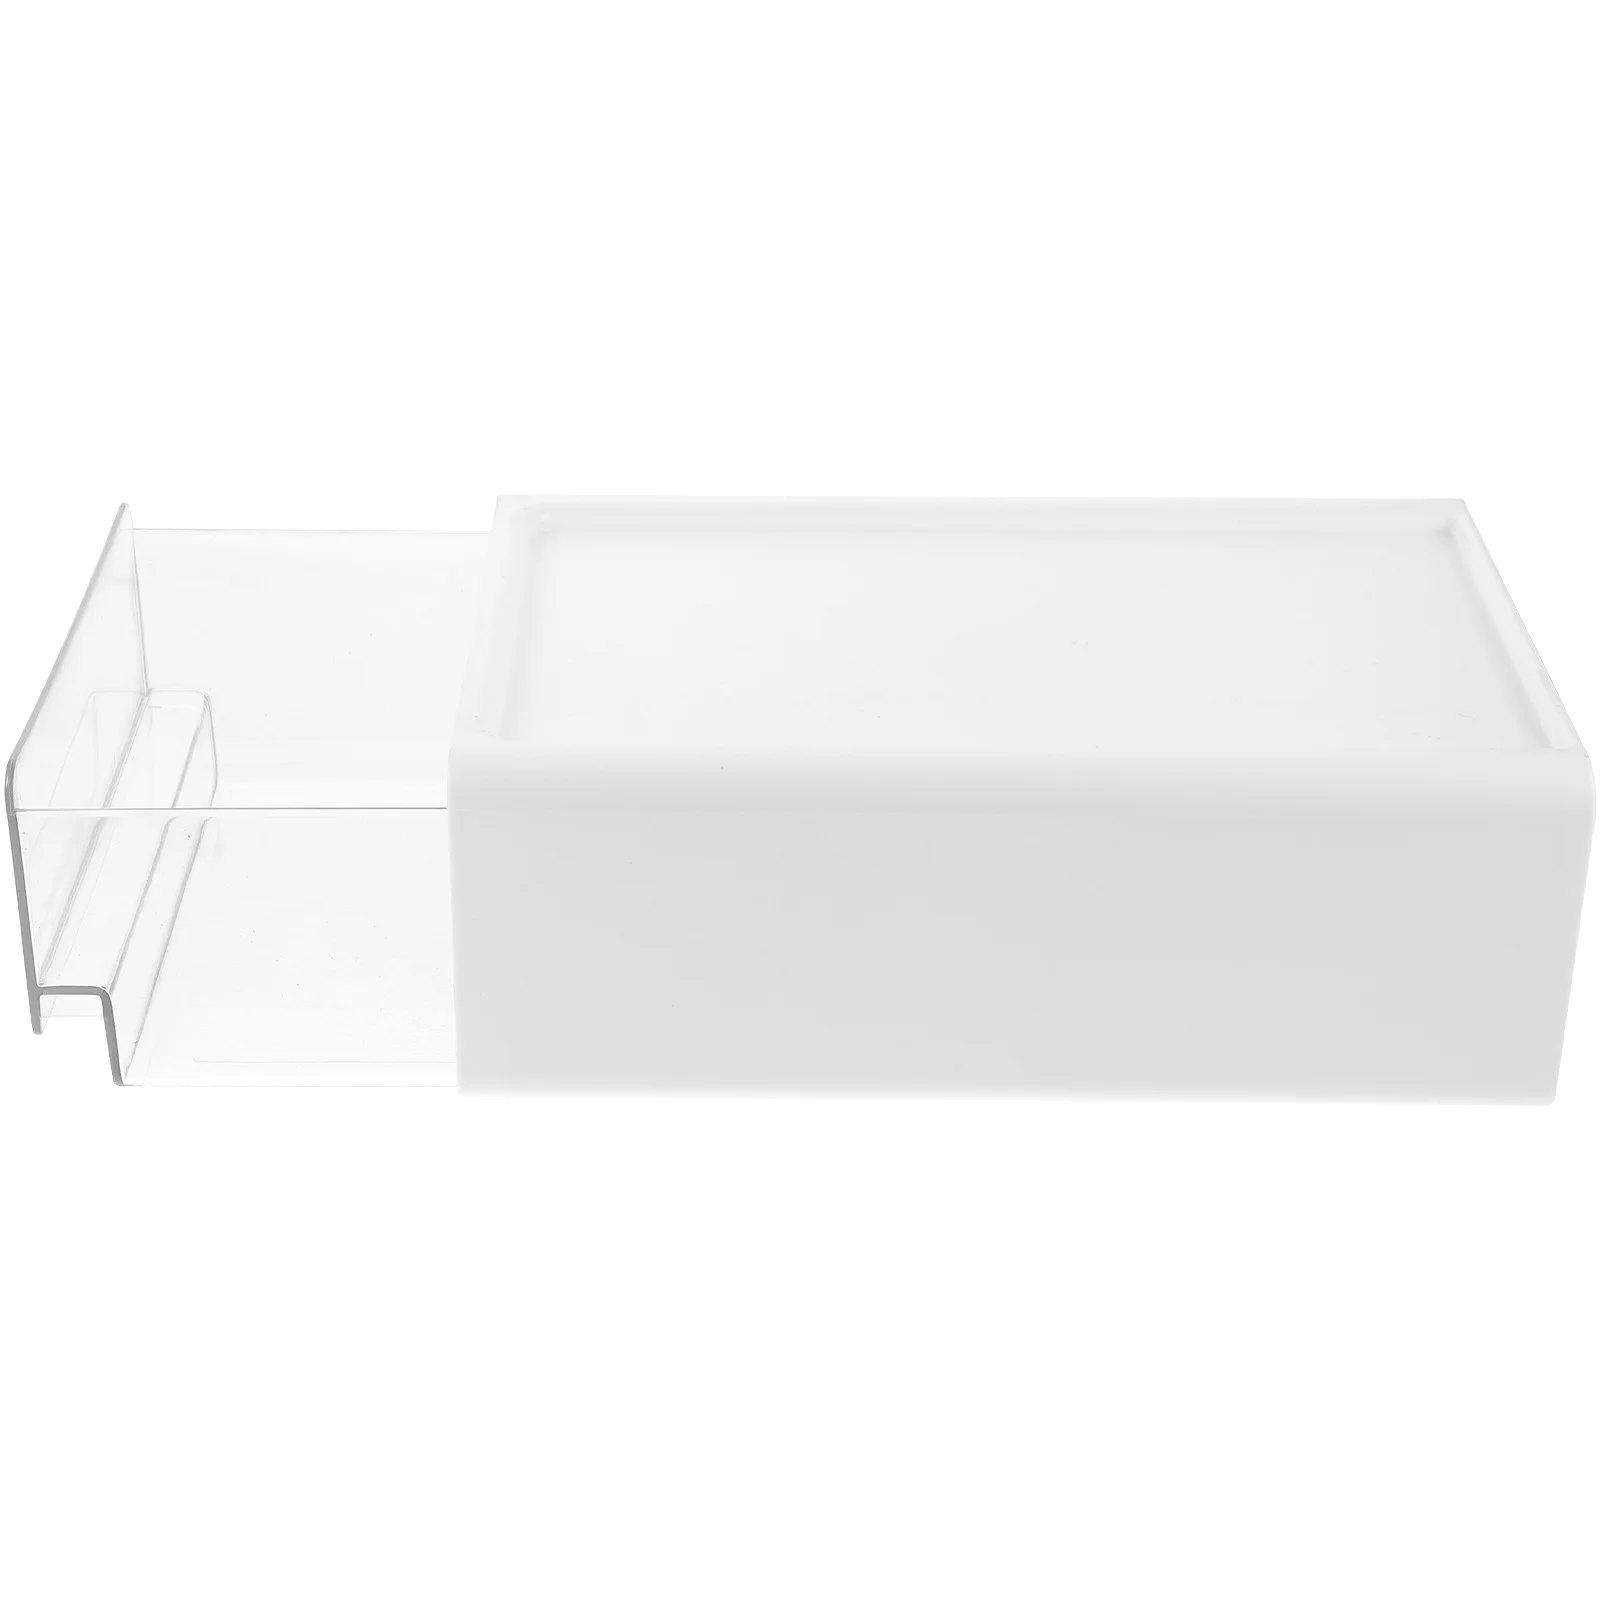 Настольный ящик для хранения Выдвижных ящиков Органайзер Кронштейн для ванной Комнаты Стеклянные шкафы Столик Маленький для 0